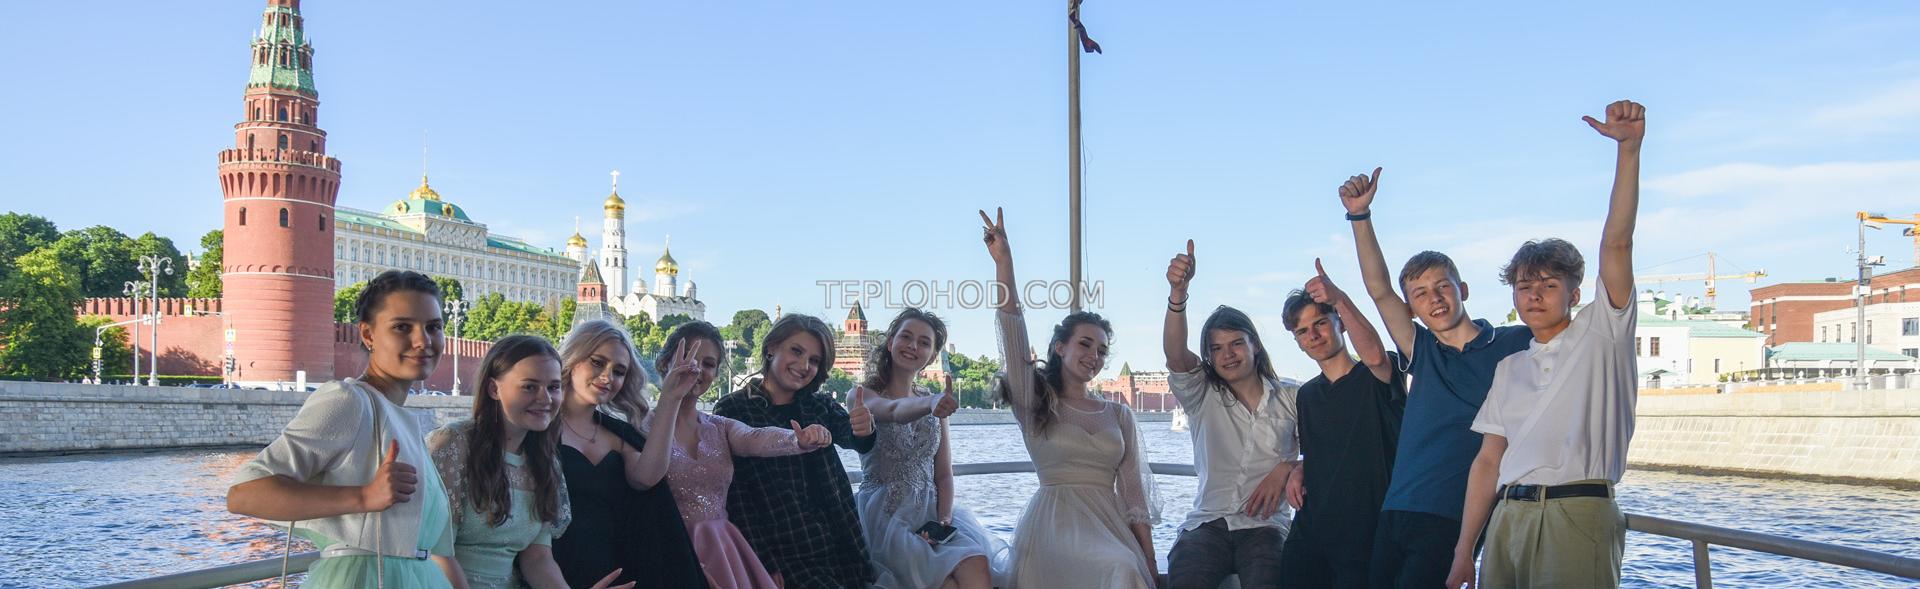 Выпускной на теплоходе в Москве с дискотекой и фейерверком